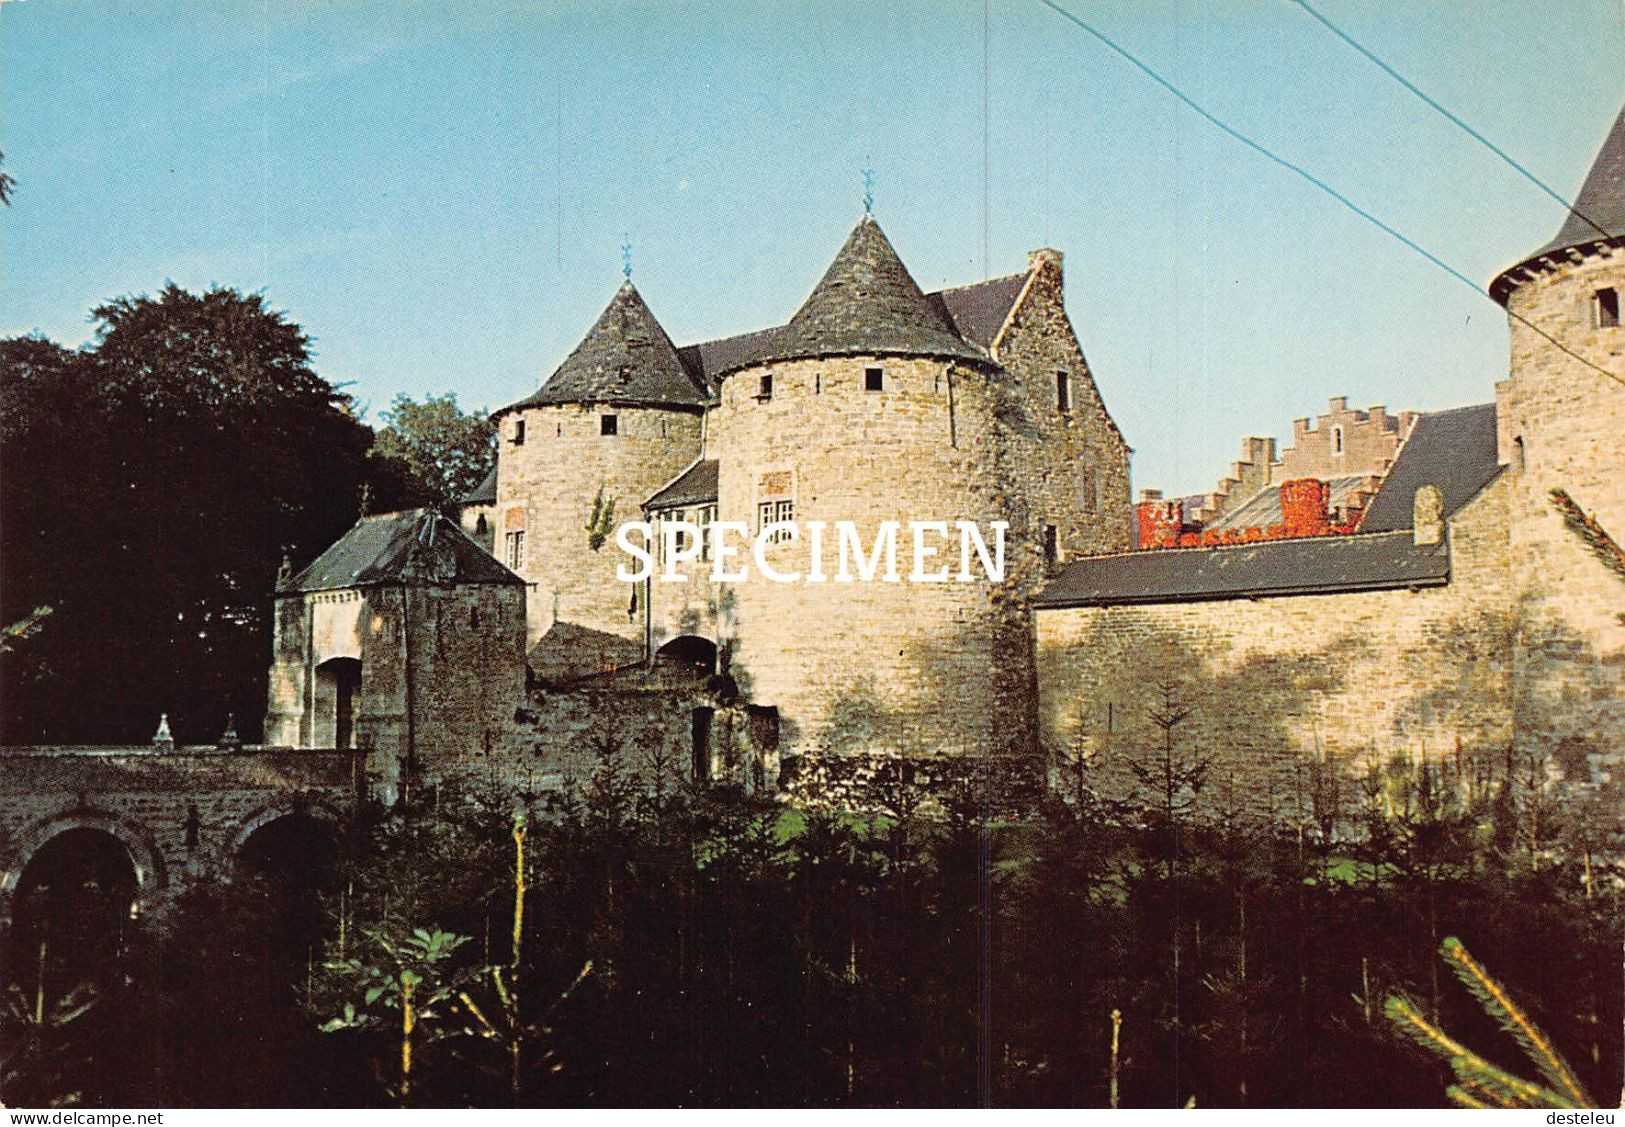 Fortresse Féodale - Corroy-le-Château - Gembloux